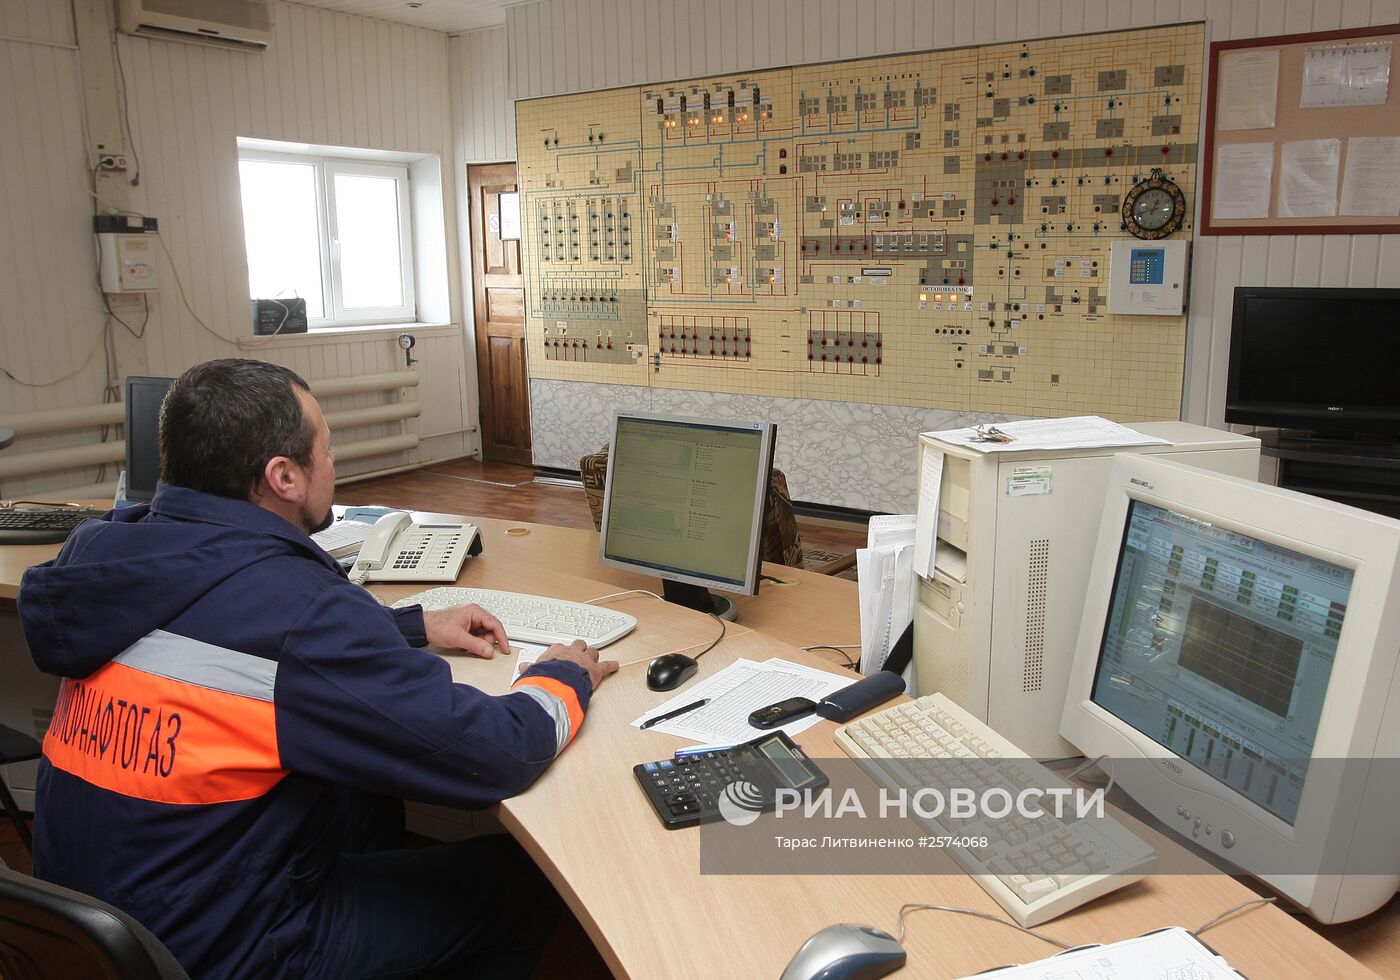 Газохранилище "Черноморнефтегаз" в Крыму